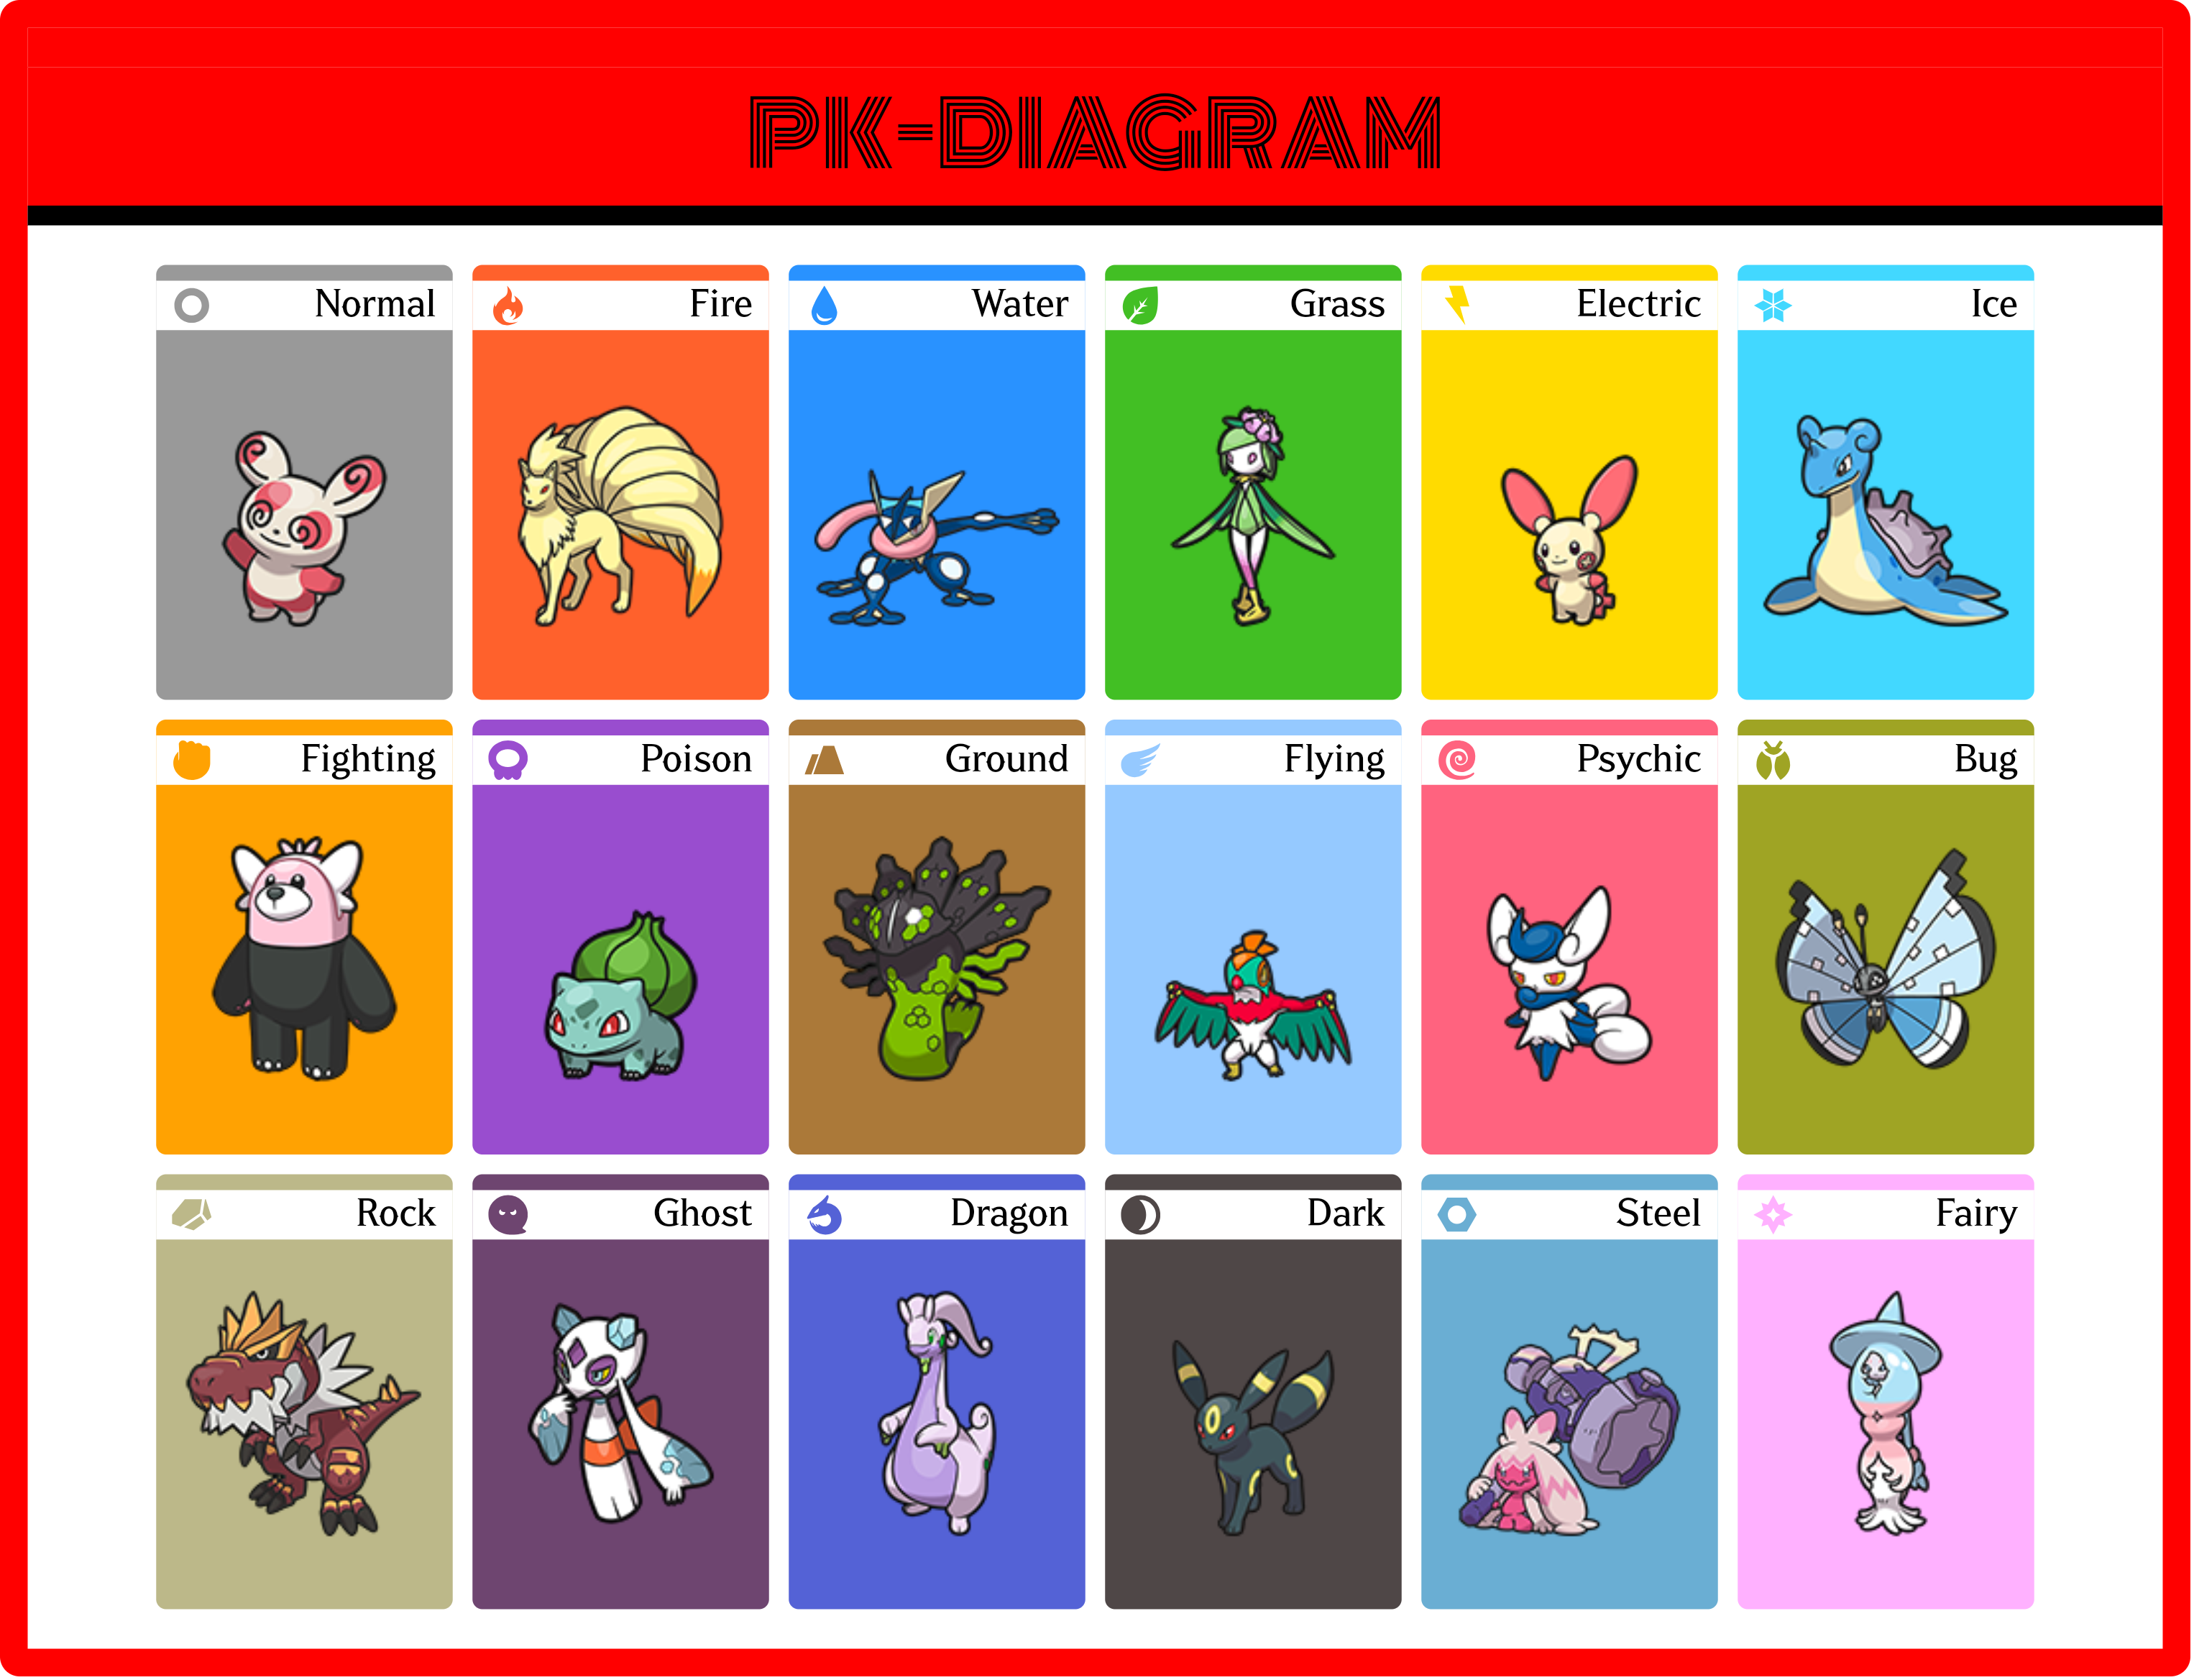 PK-DIAGRAM (1).png